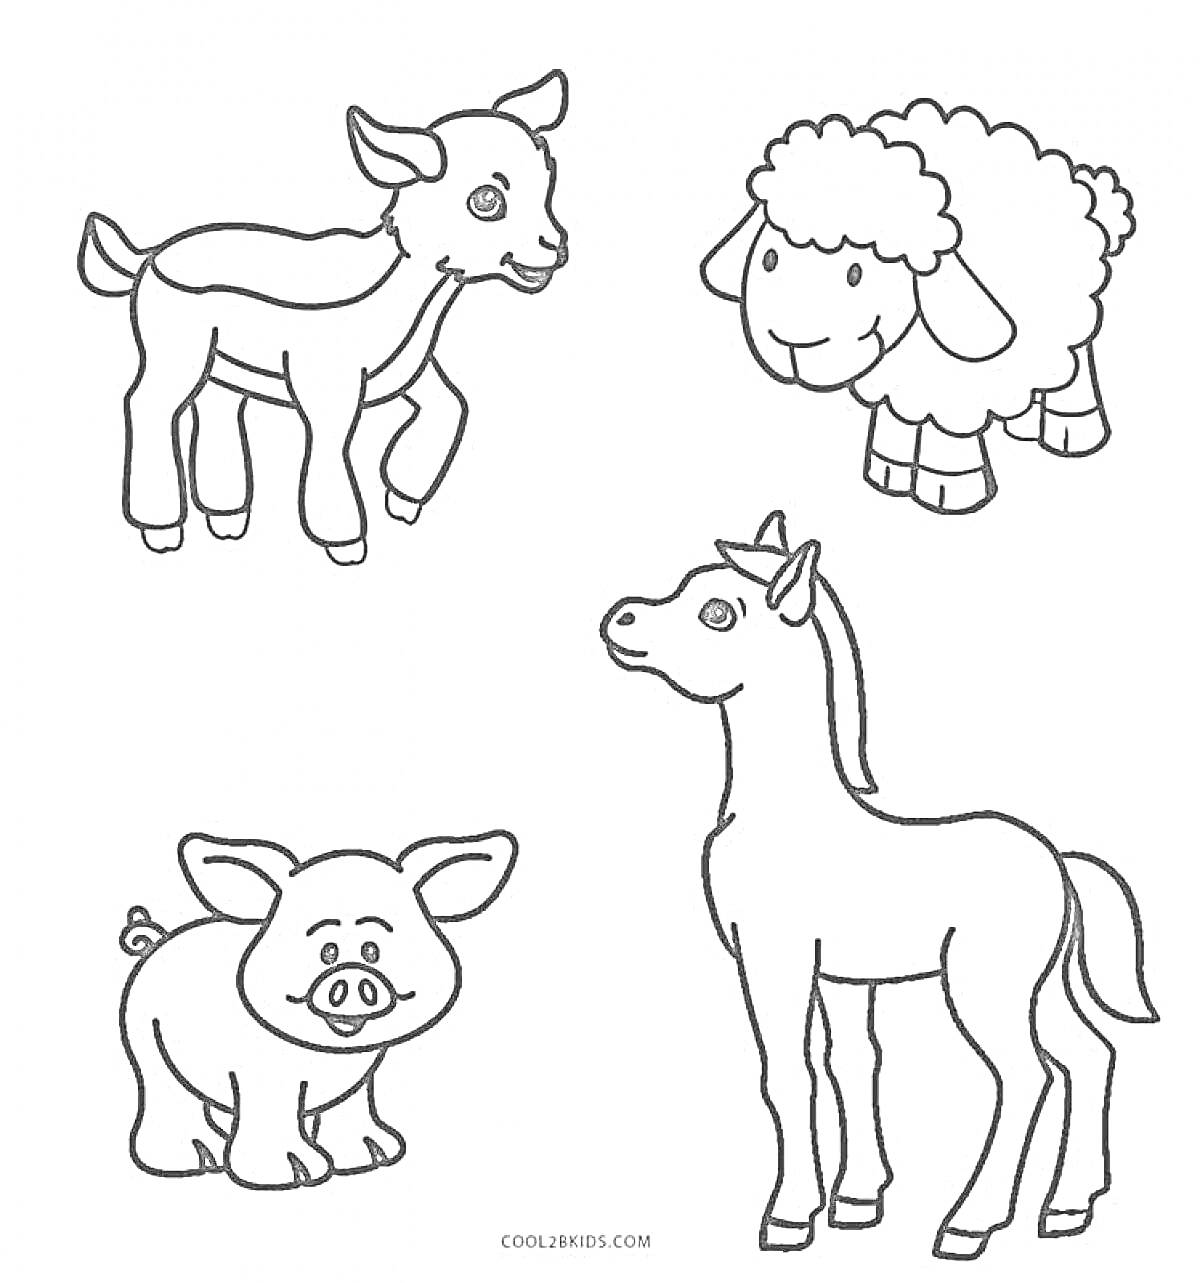 Раскраска Детская раскраска с изображением козленка, овечки, поросенка и жеребенка